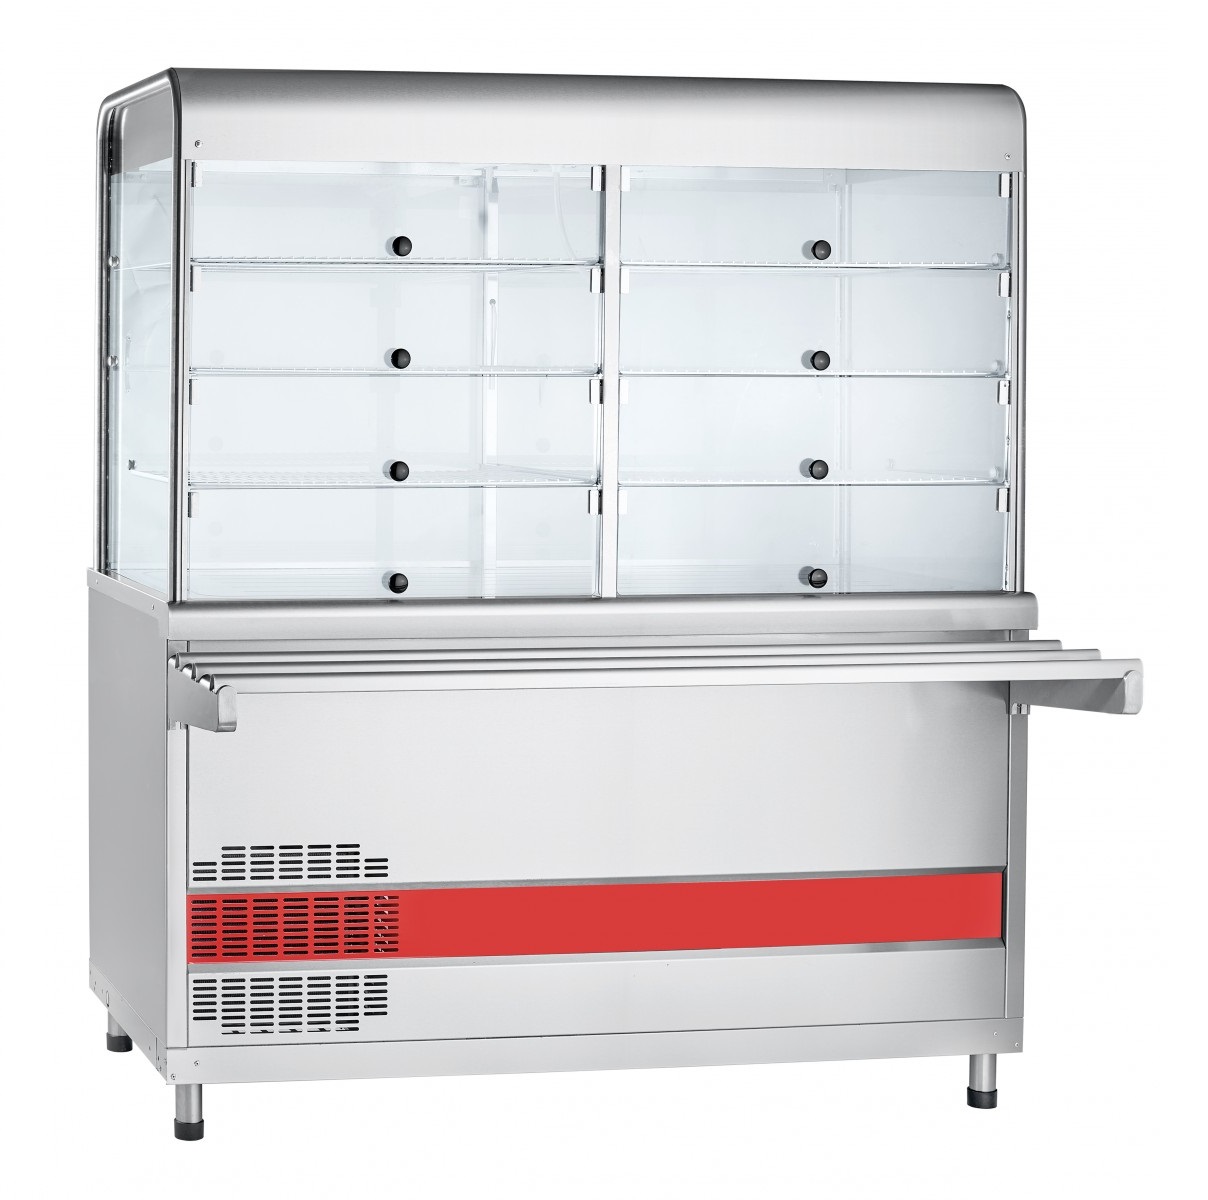 Купить Прилавок- витрина холодильный ABAT АСТА ПВВ(Н)-70КМ-С-01-НШ вся нерж. плоский стол (1500мм) 